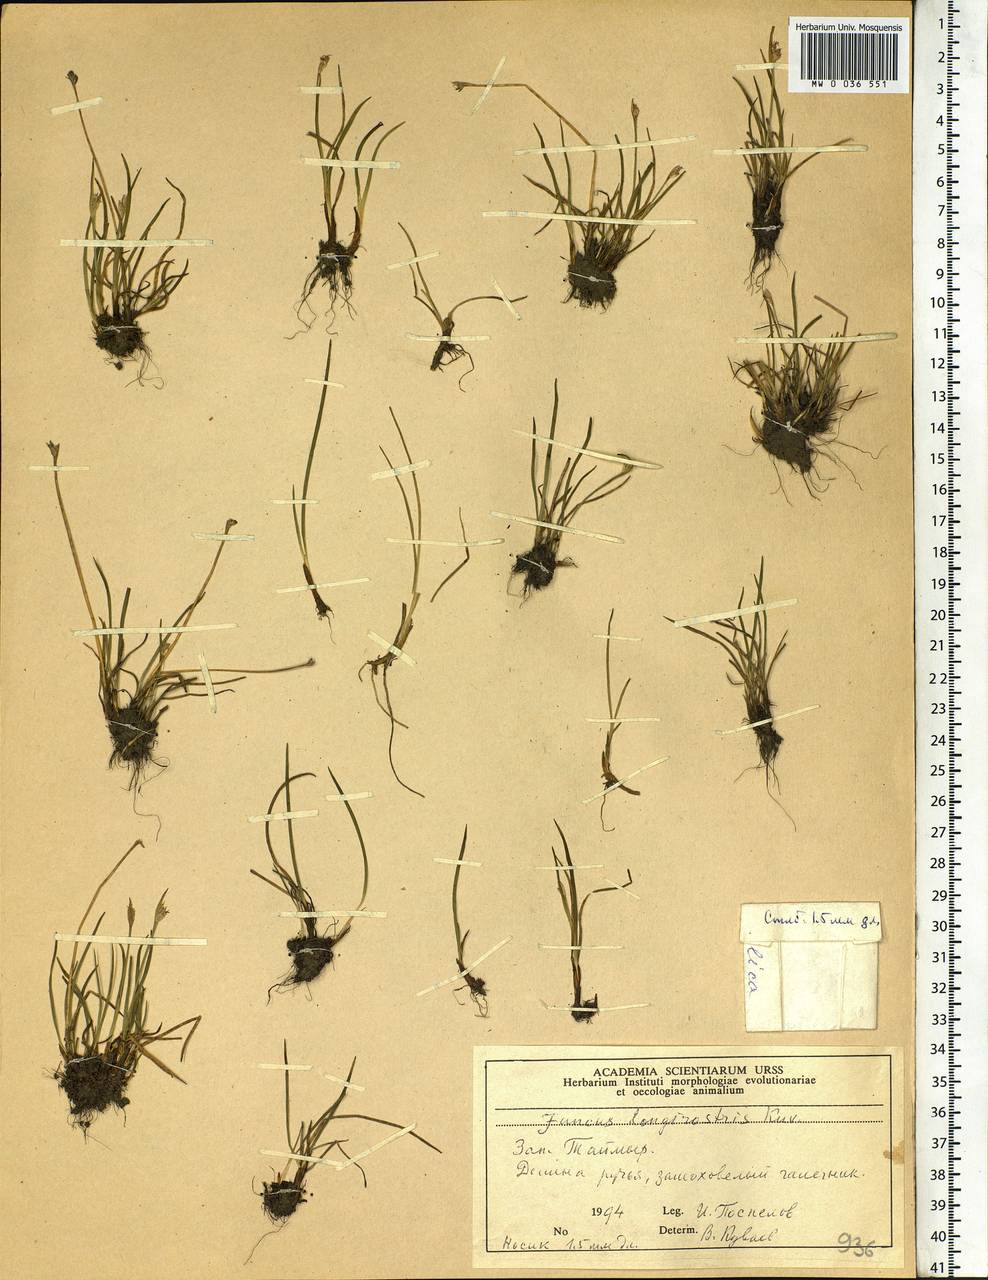 Juncus longirostris Kuvaev, Siberia, Central Siberia (S3) (Russia)